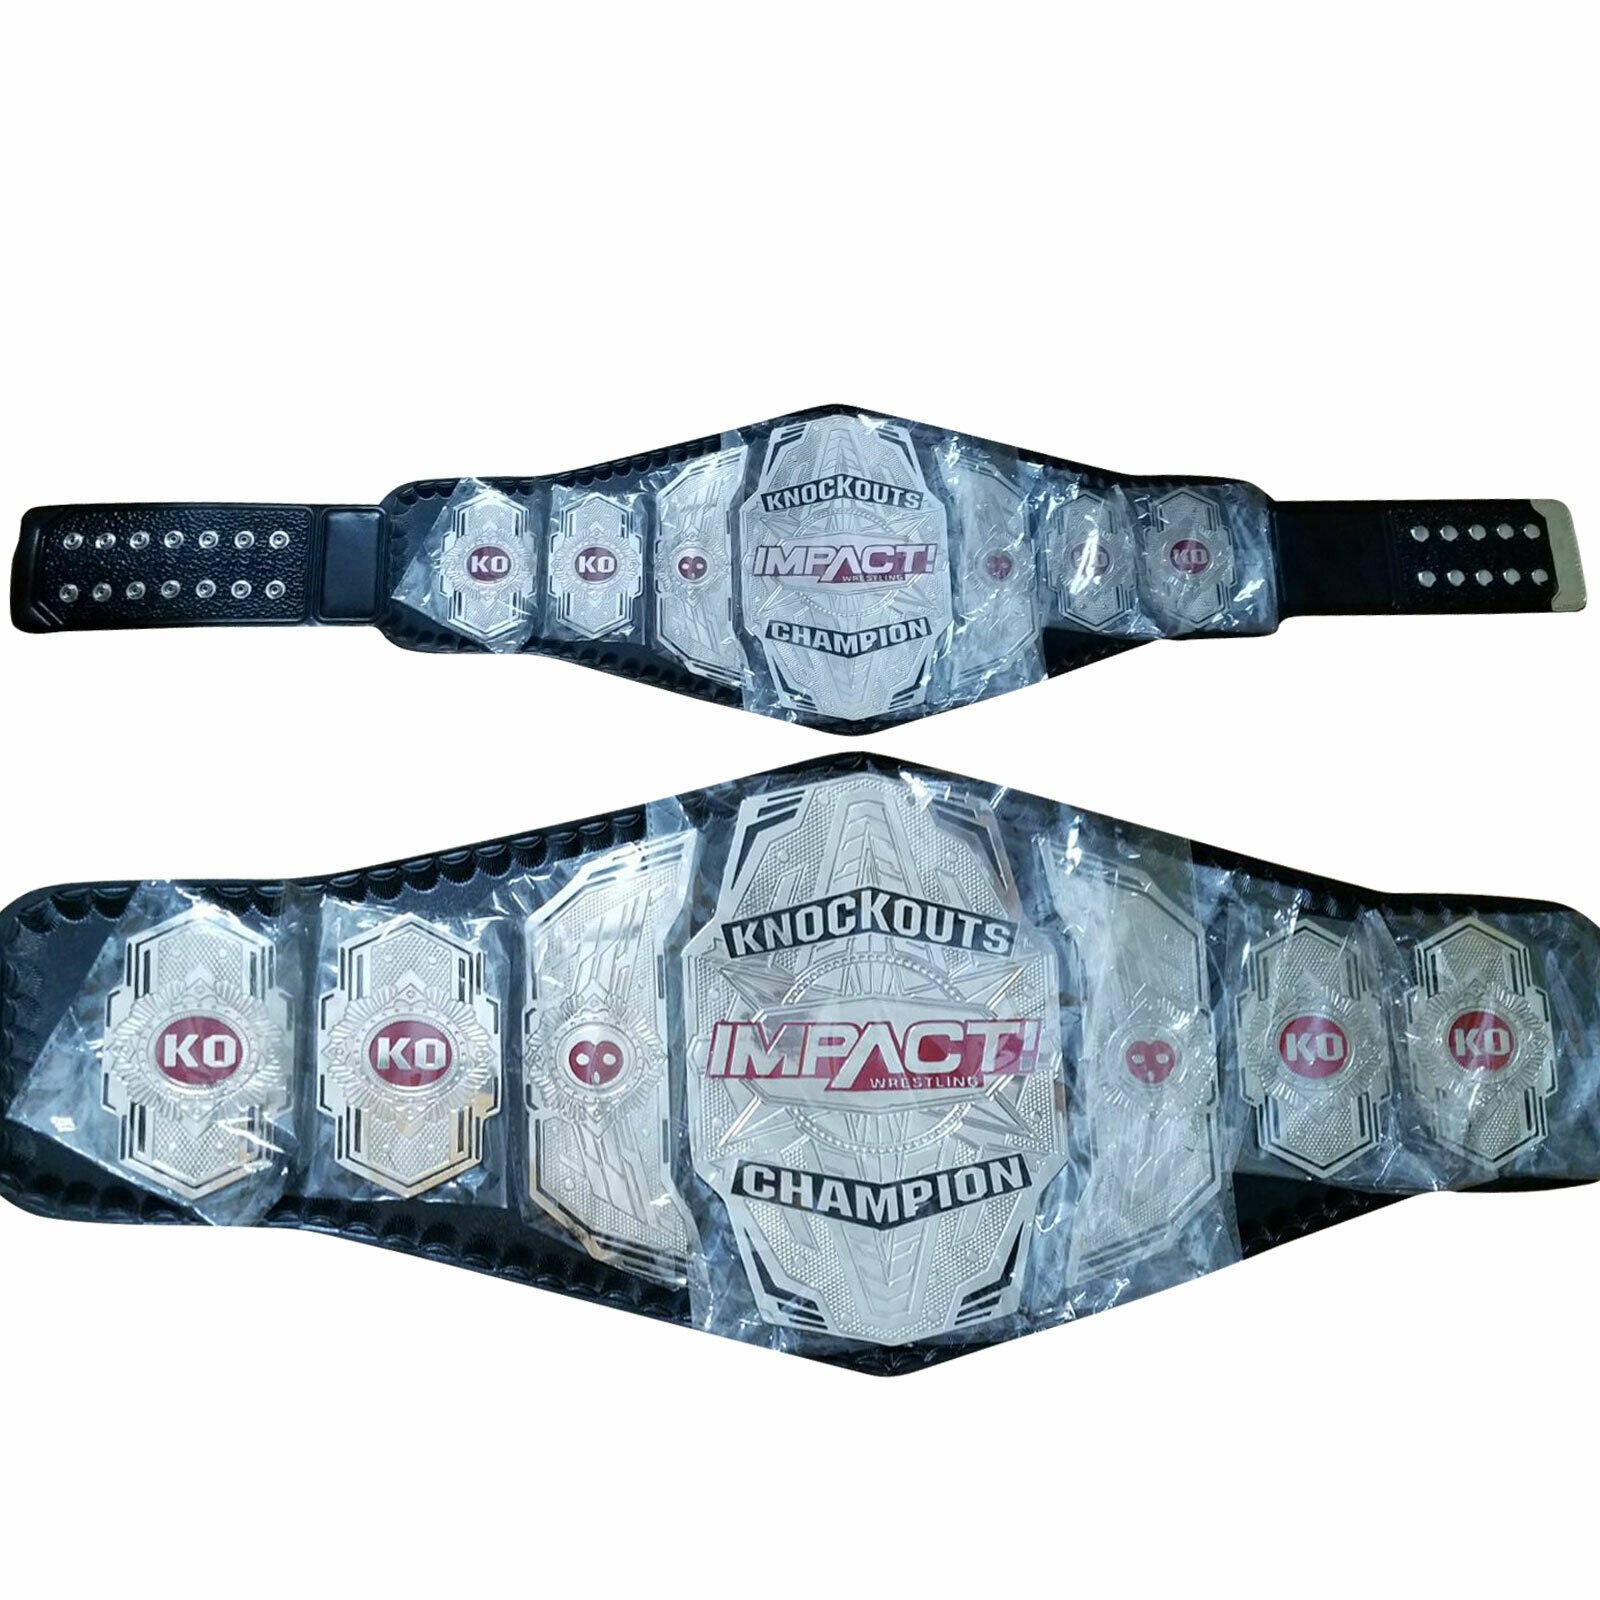 TNA Impact Knockout Red Version Wrestling Championship Title Belt